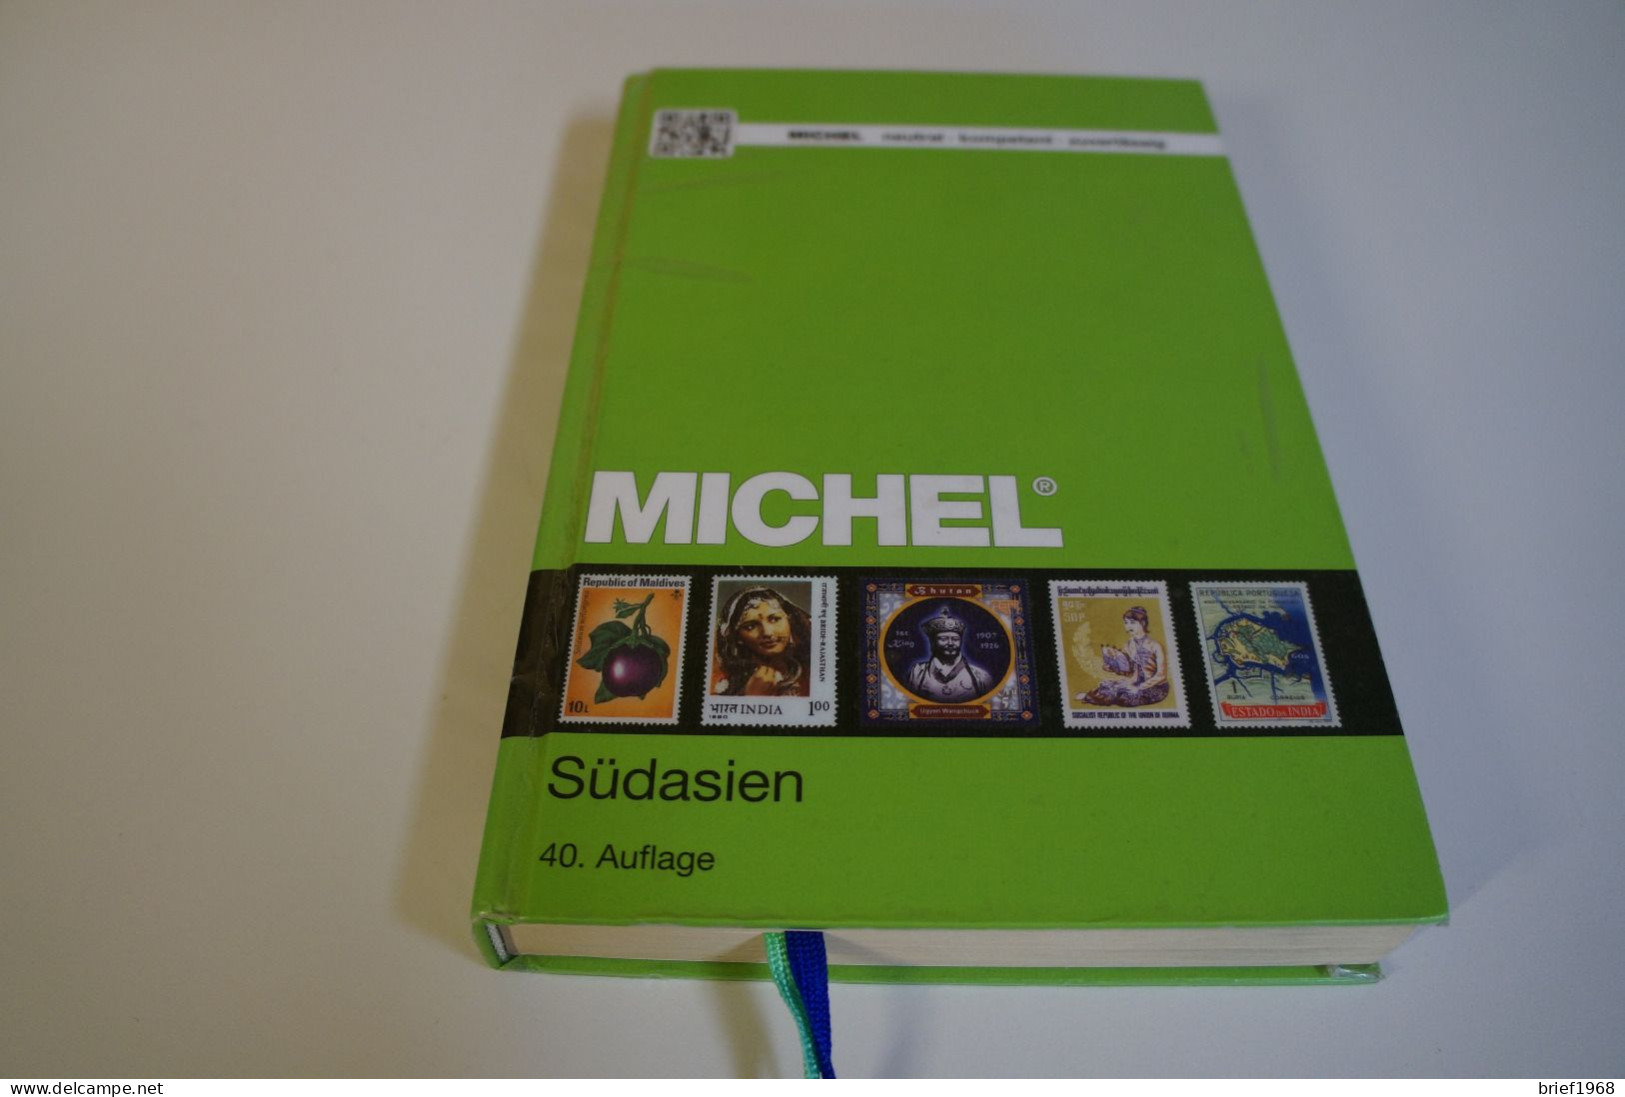 Michel Südasien, 40. Auflage (27245) - Germania